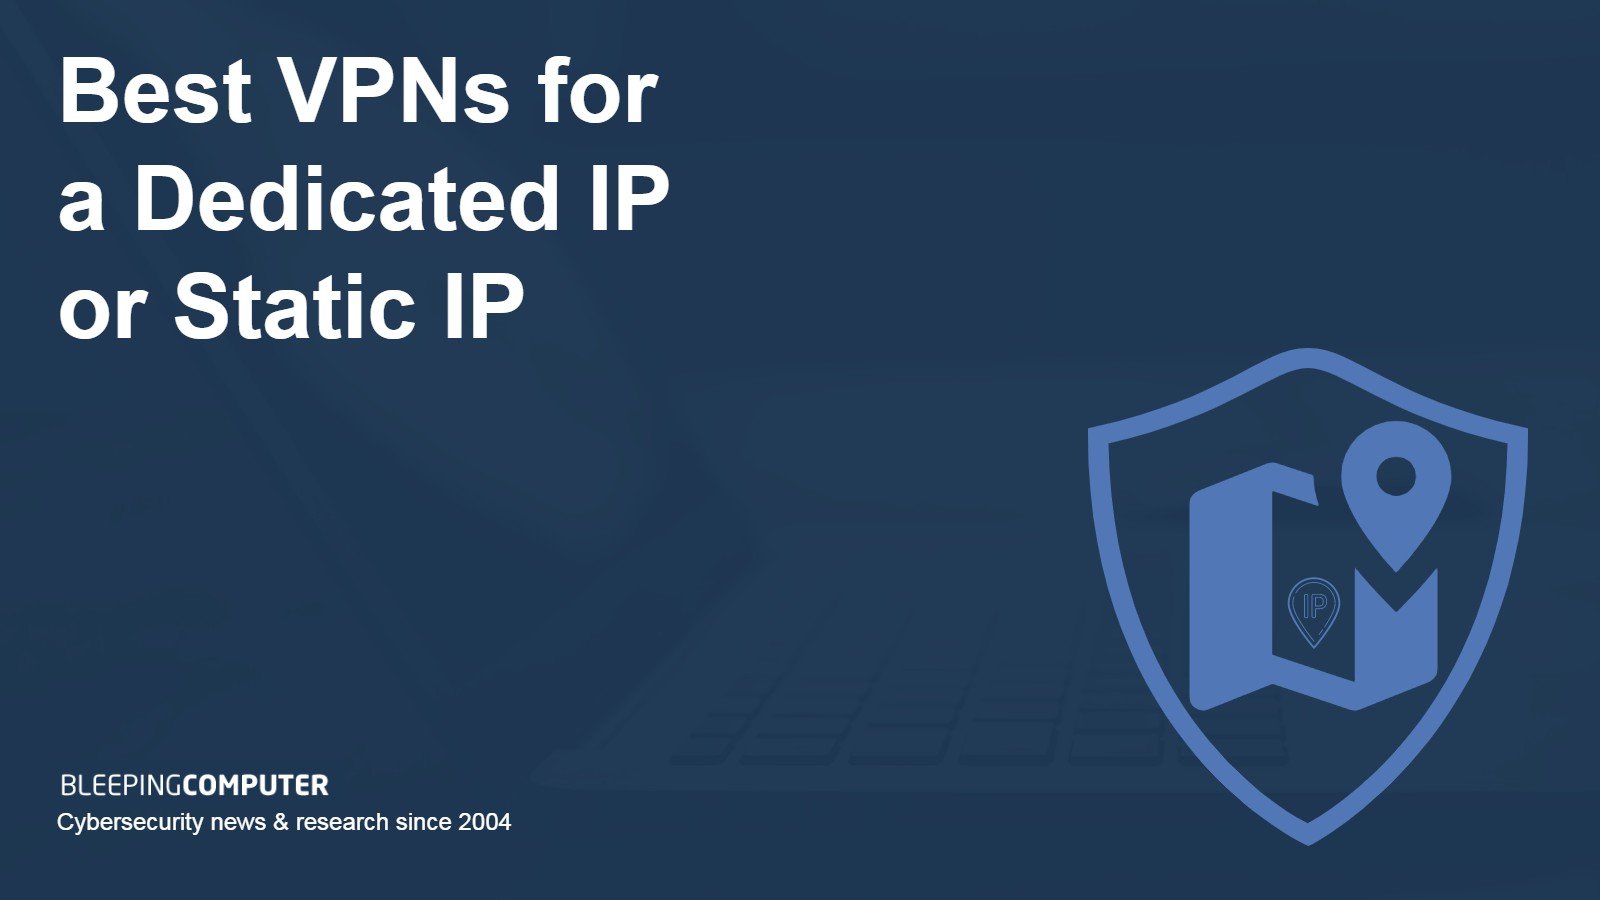 dedicated or static IP